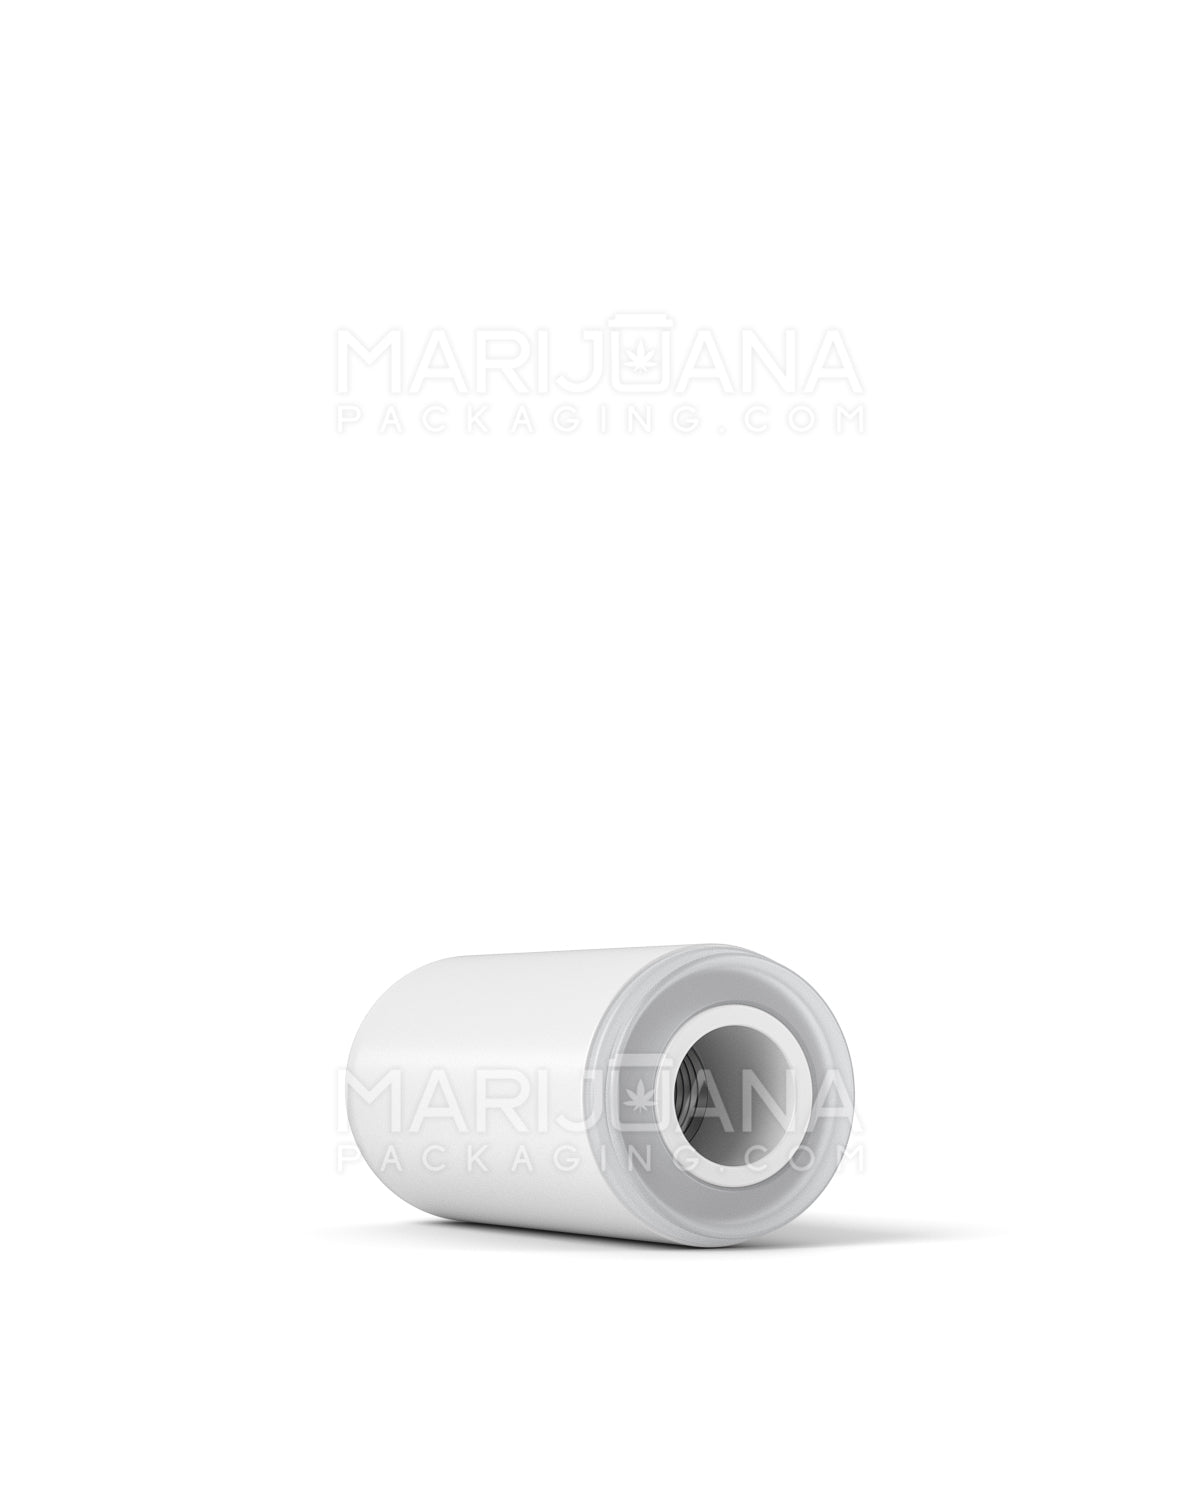 AVD | Bullet Vape Mouthpiece for Glass Cartridges | White Ceramic - Screw On - 600 Count - 6